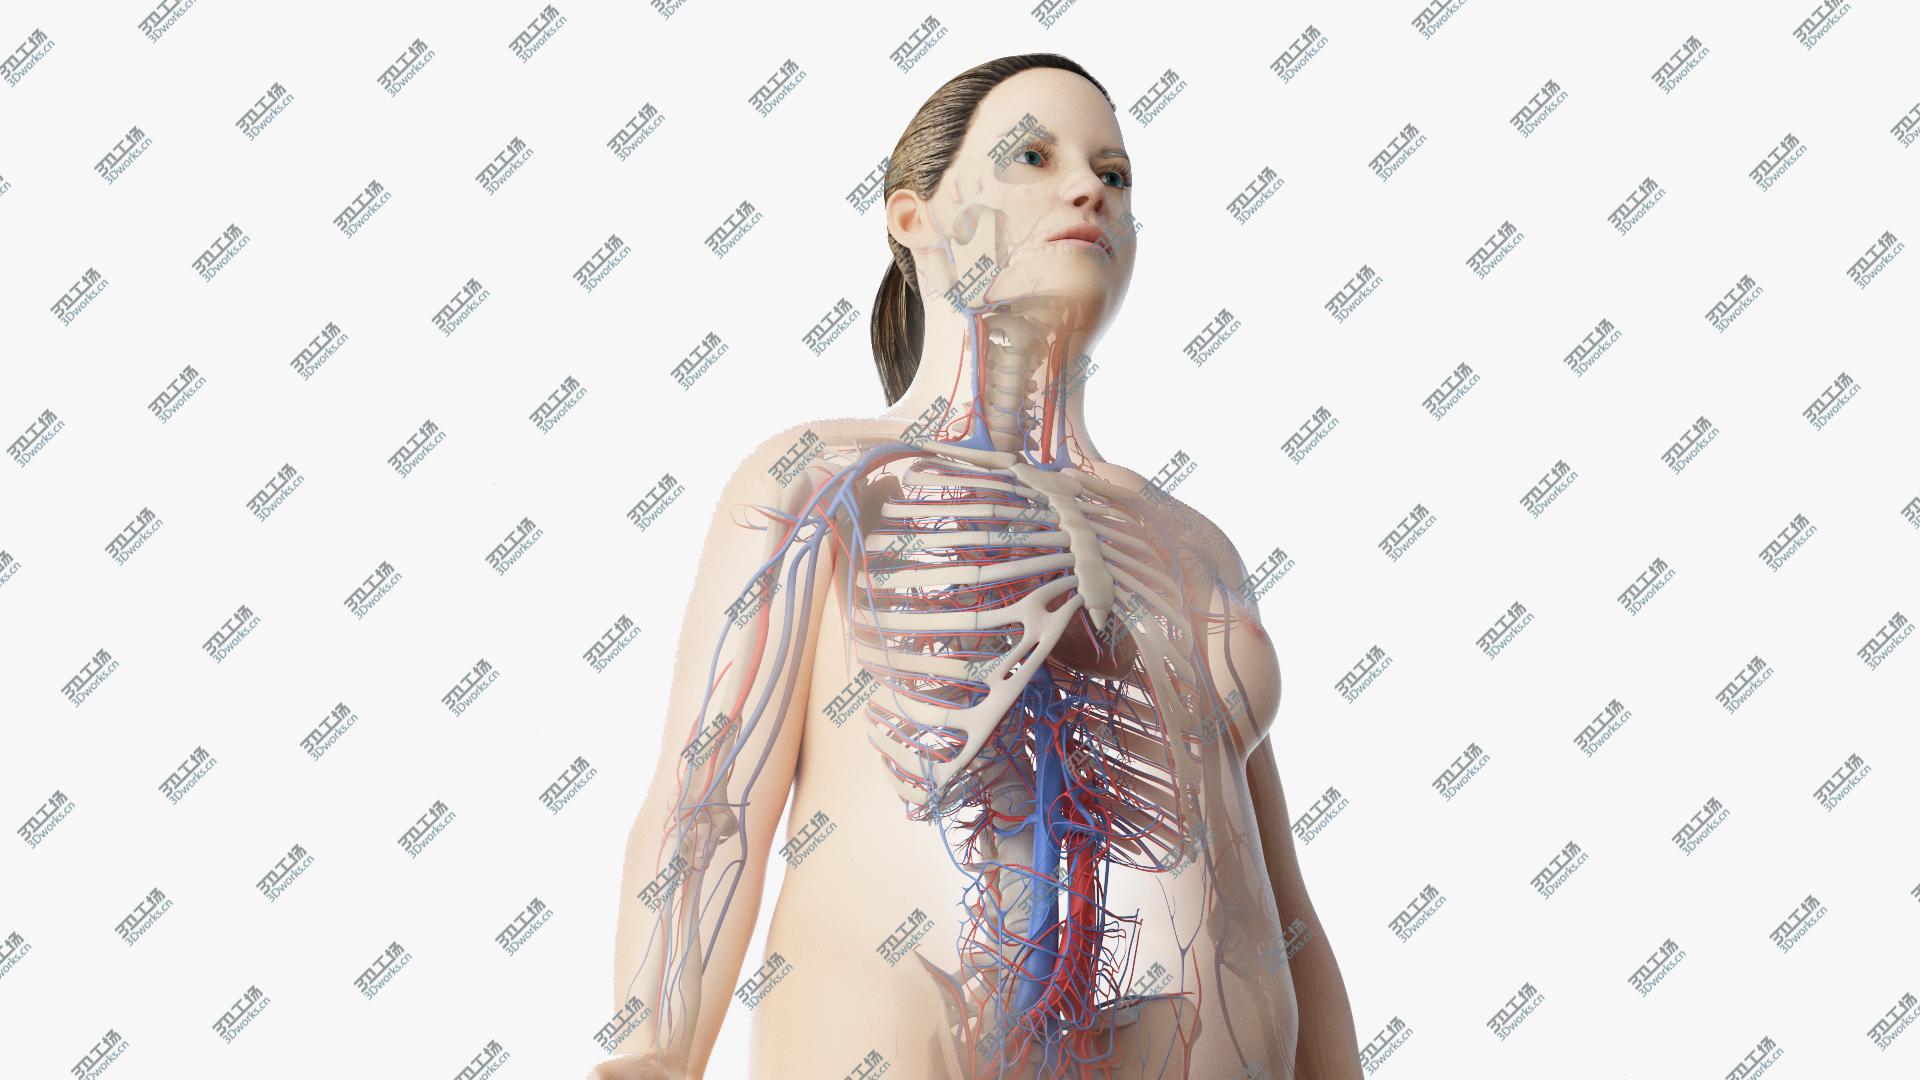 images/goods_img/20210313/3D Obese Female Skin, Skeleton And Vascular System Rigged model/1.jpg